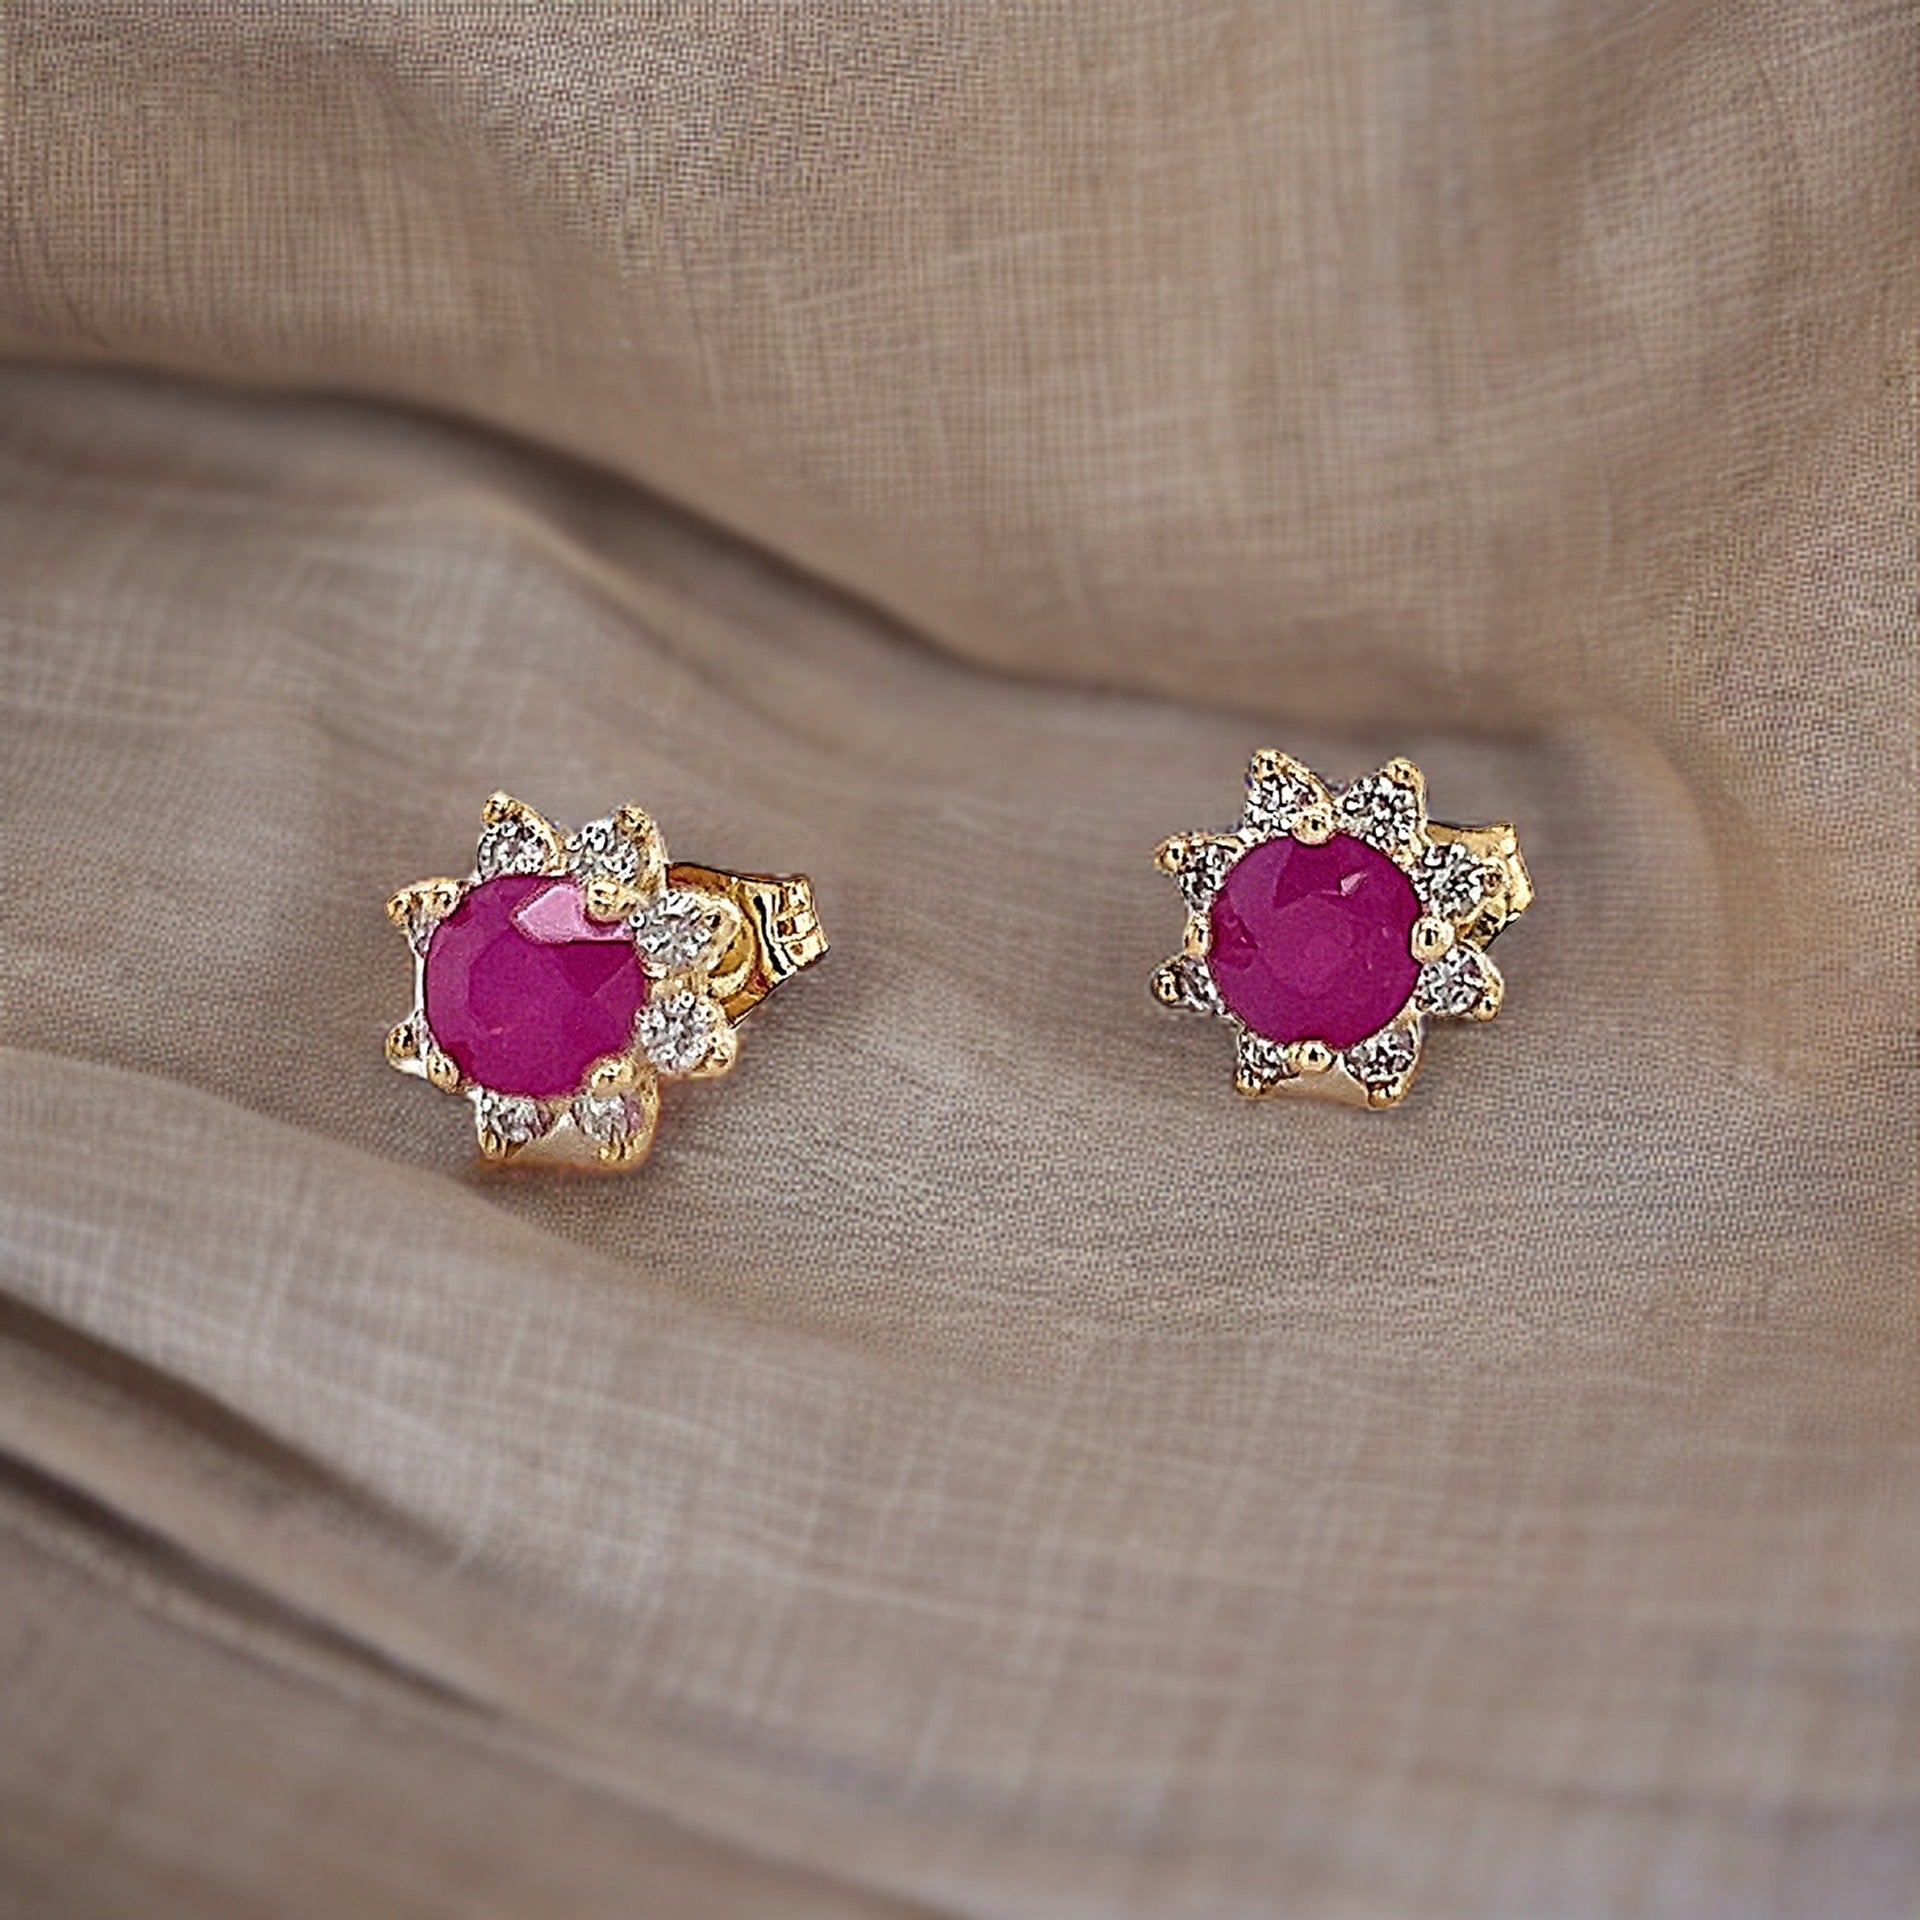 Natural Ruby Diamond Earrings 14k Gold 1.25 TCW Certified $2,290 210748 - Certified Fine Jewelry